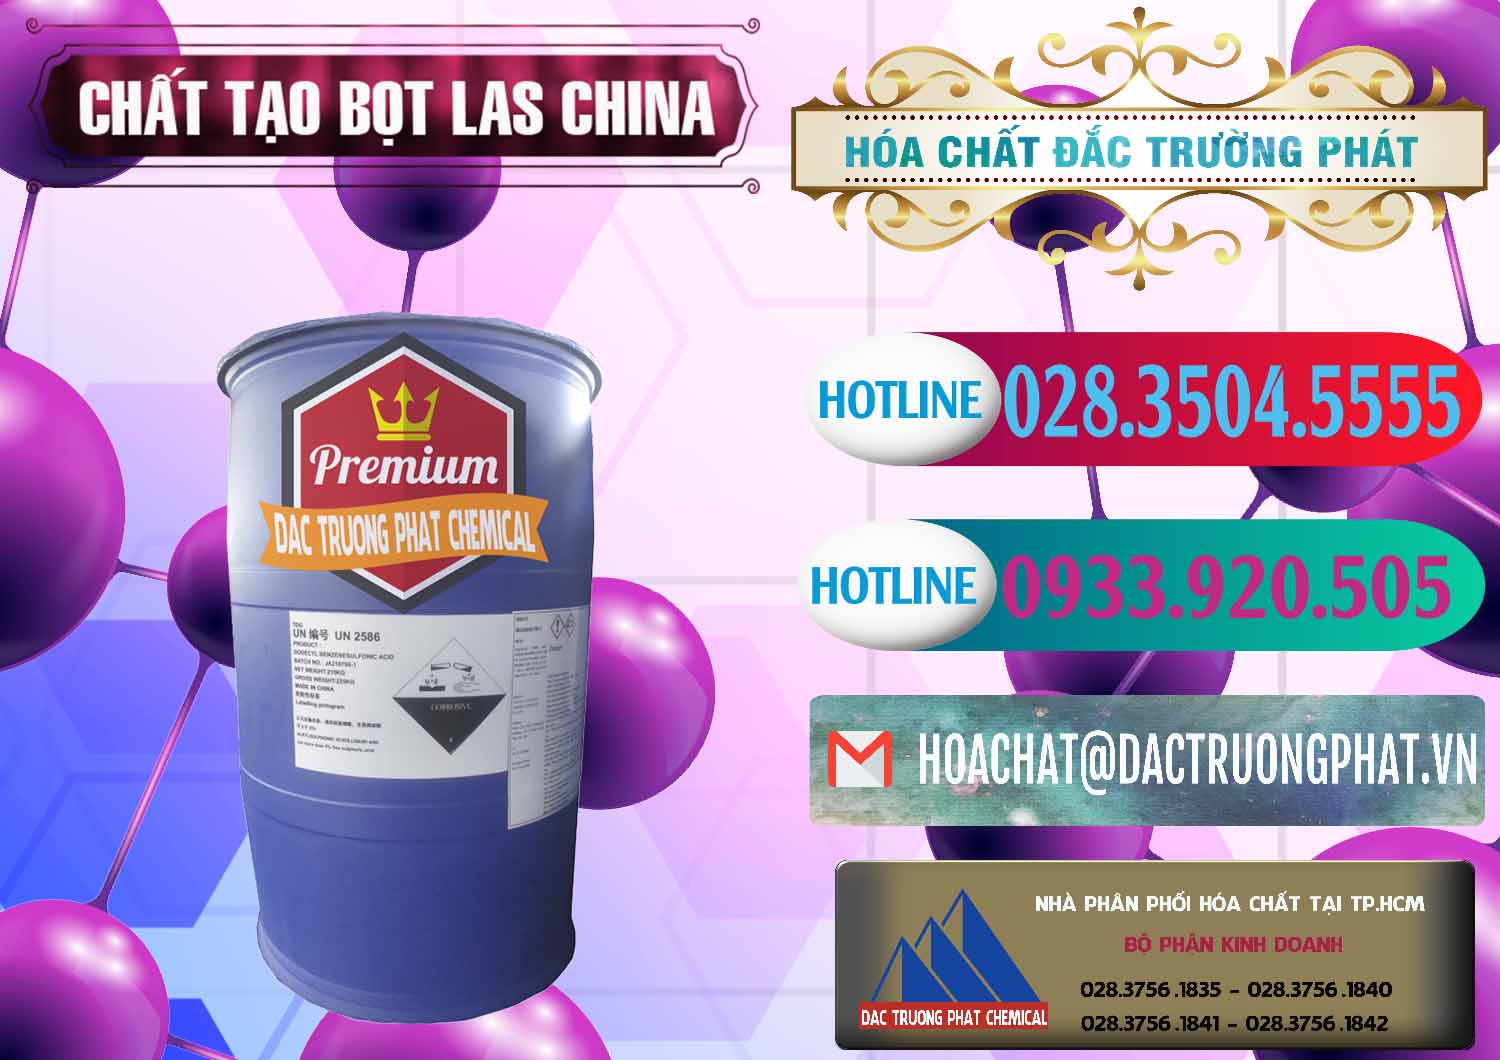 Đơn vị chuyên cung cấp và bán Chất tạo bọt Las Trung Quốc China - 0451 - Cty chuyên cung cấp _ nhập khẩu hóa chất tại TP.HCM - truongphat.vn